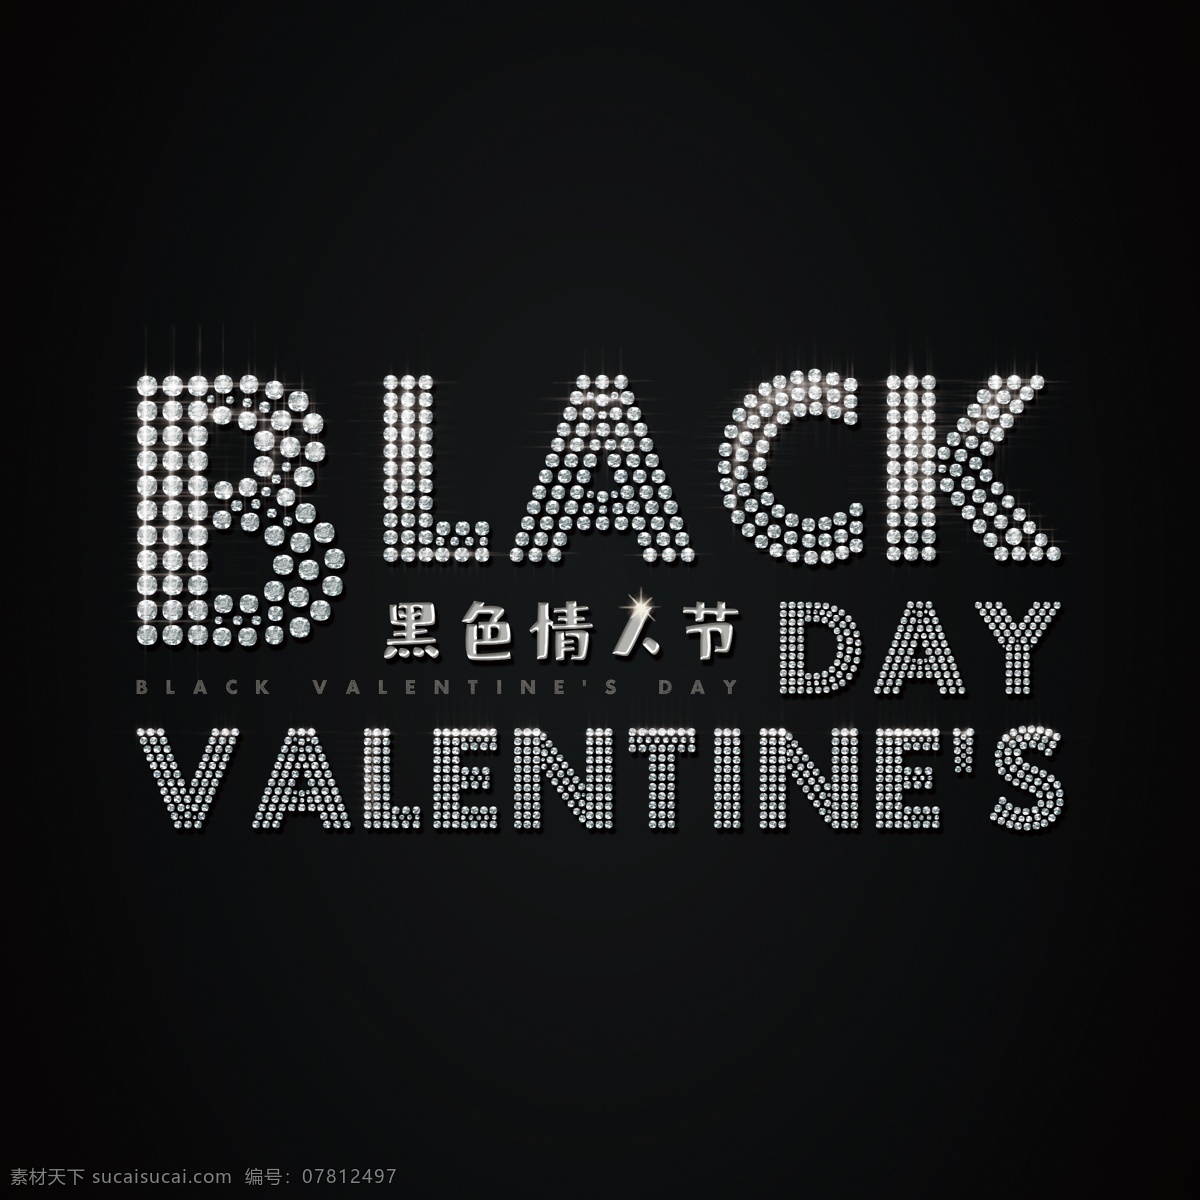 黑色 情人节 原创 钻石 艺术 字 black valentines day 黑白 黑色情人节 艺术字 中文 英文 钻石字 金属字 银色 字体排版 经典 大气 朋克 摇滚